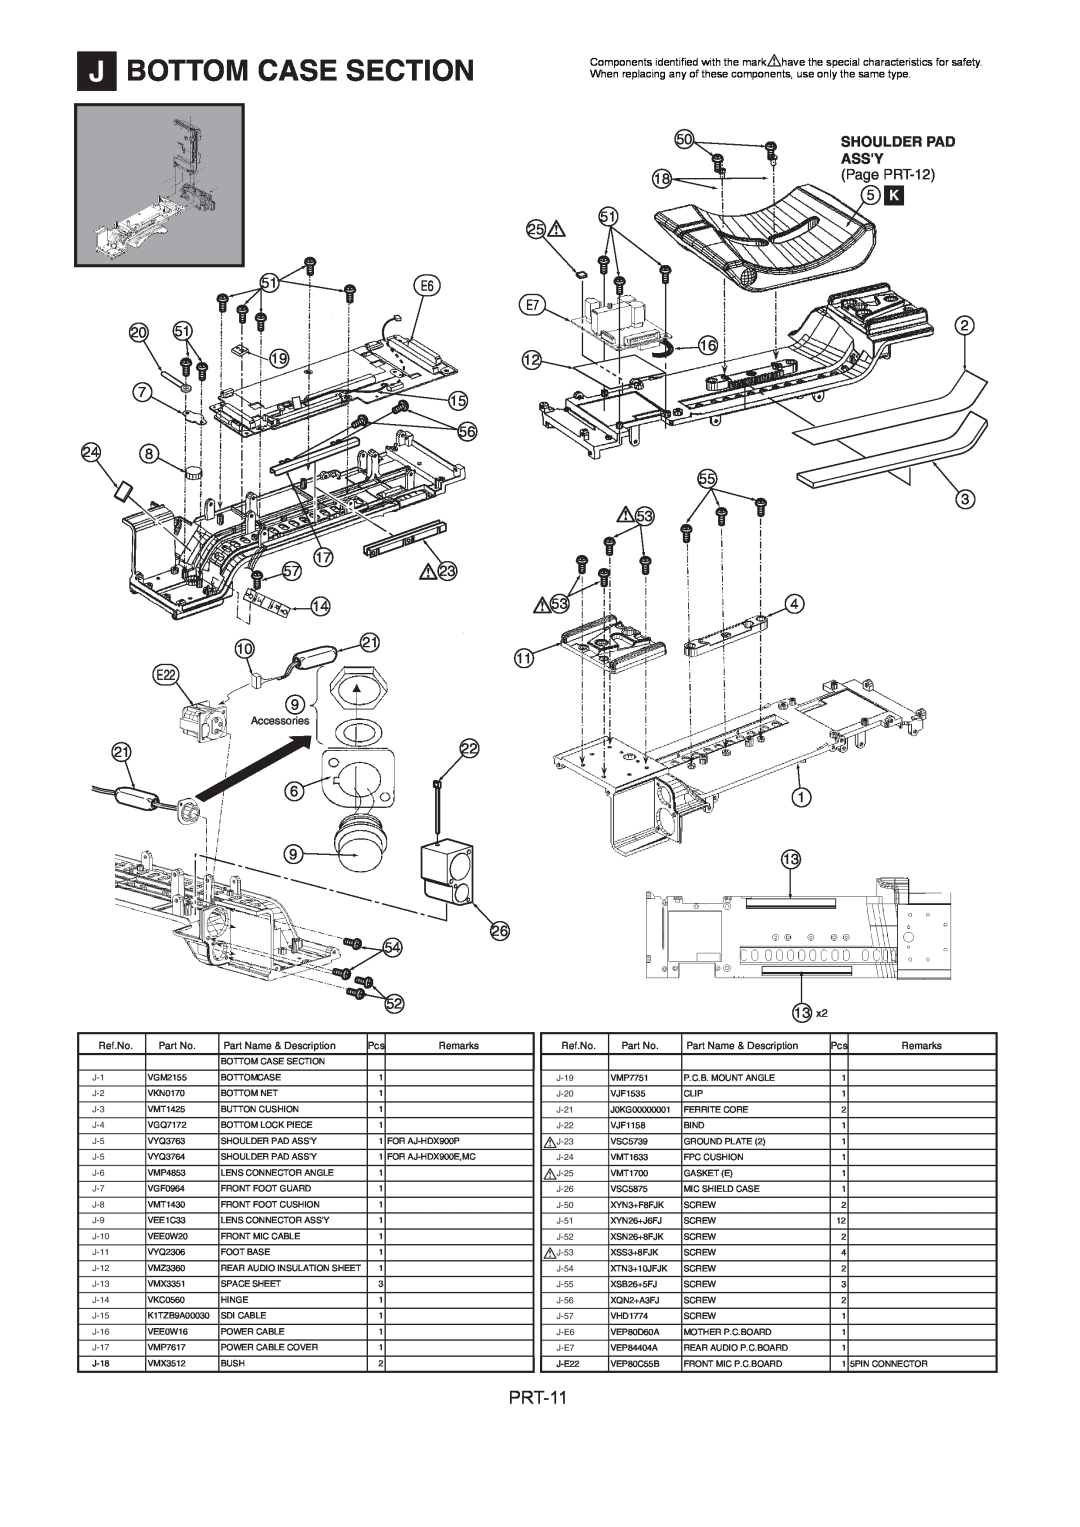 Panasonic AJ-HDX900MC J Bottom Case Section, Shoulder Pad Assy, Page PRT-12, Accessories, Ref.No, Part Name & Description 